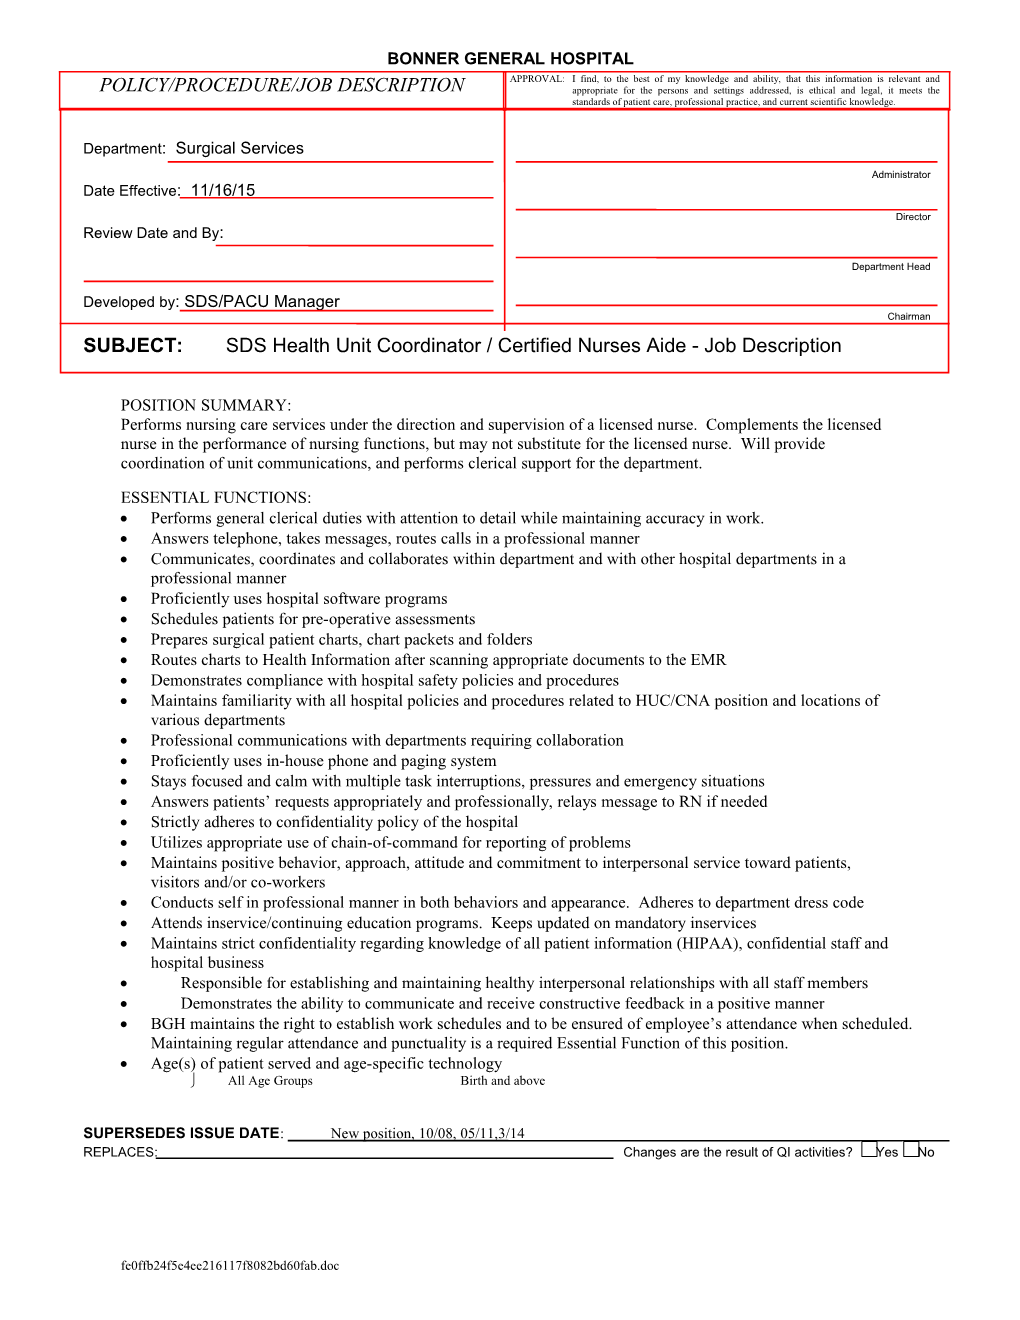 Subject: SDS Health Unit Coordinator / Certified Nurses Aide (HUC/CNA) - Job Description